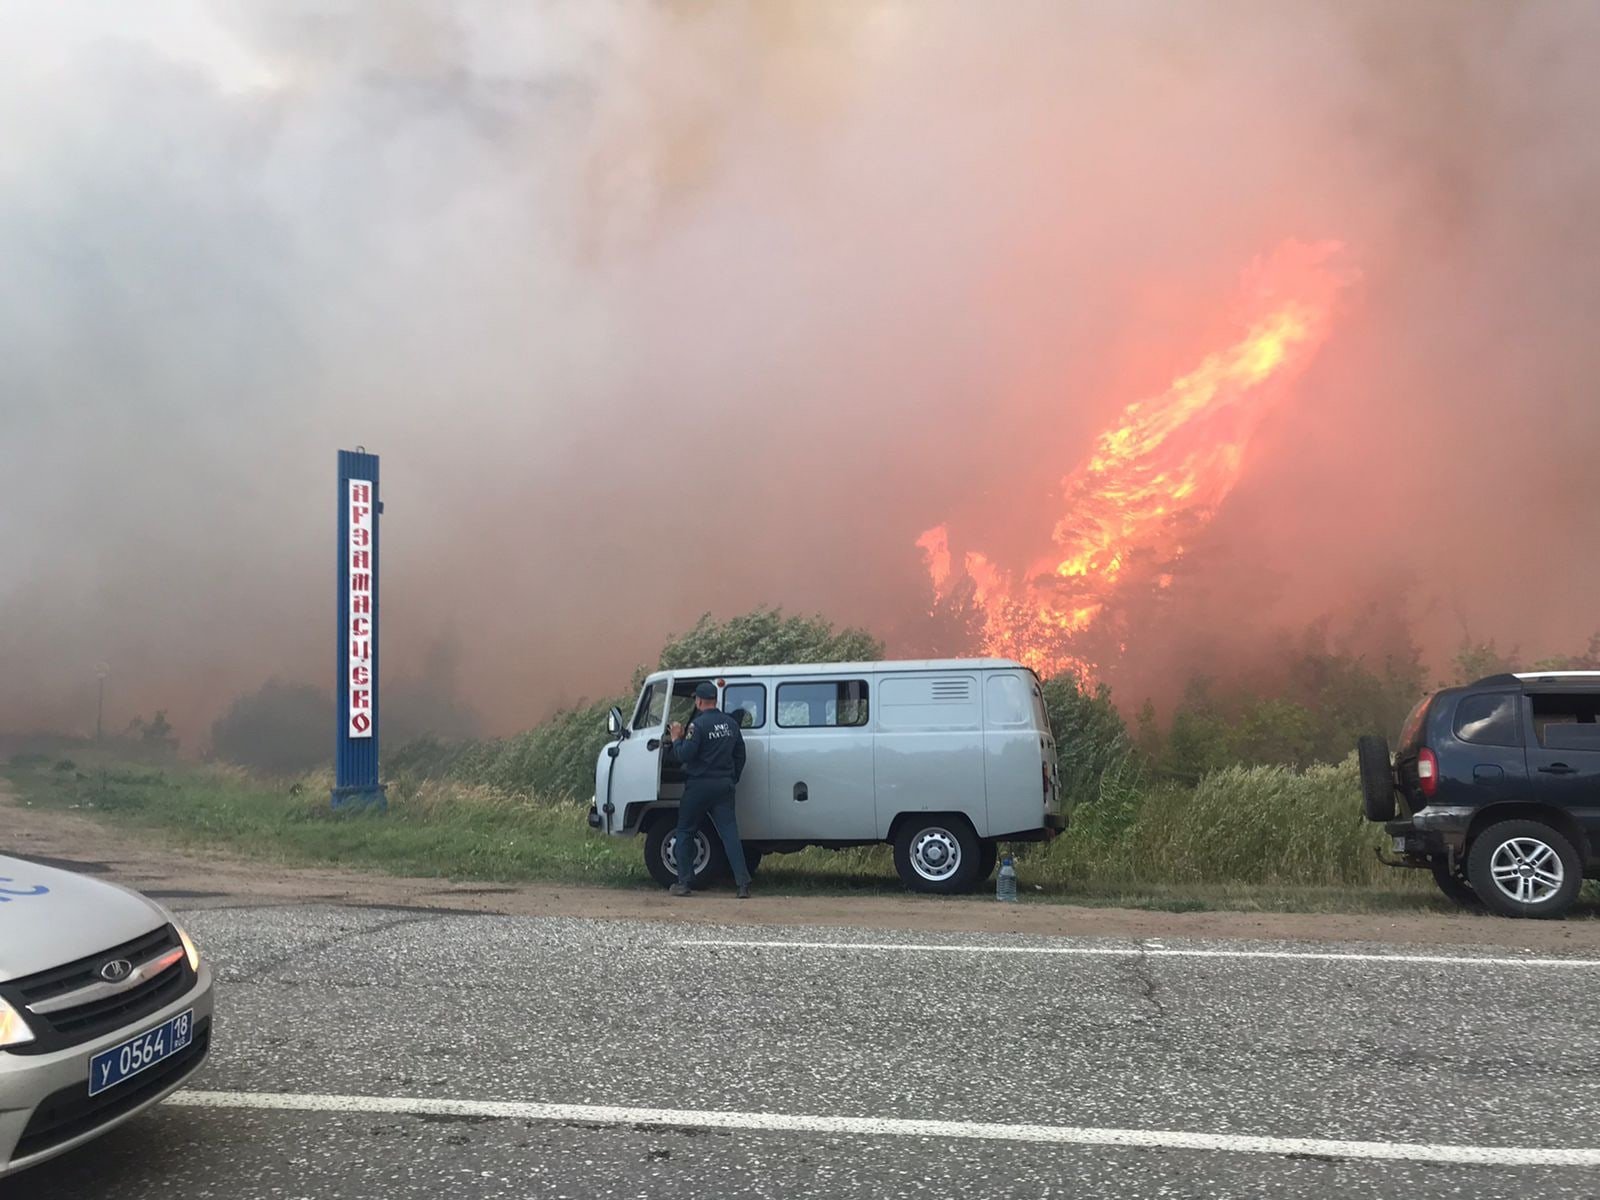 

На трассе между Сарапулом и Каракулино затруднено движение из-за лесного пожара

